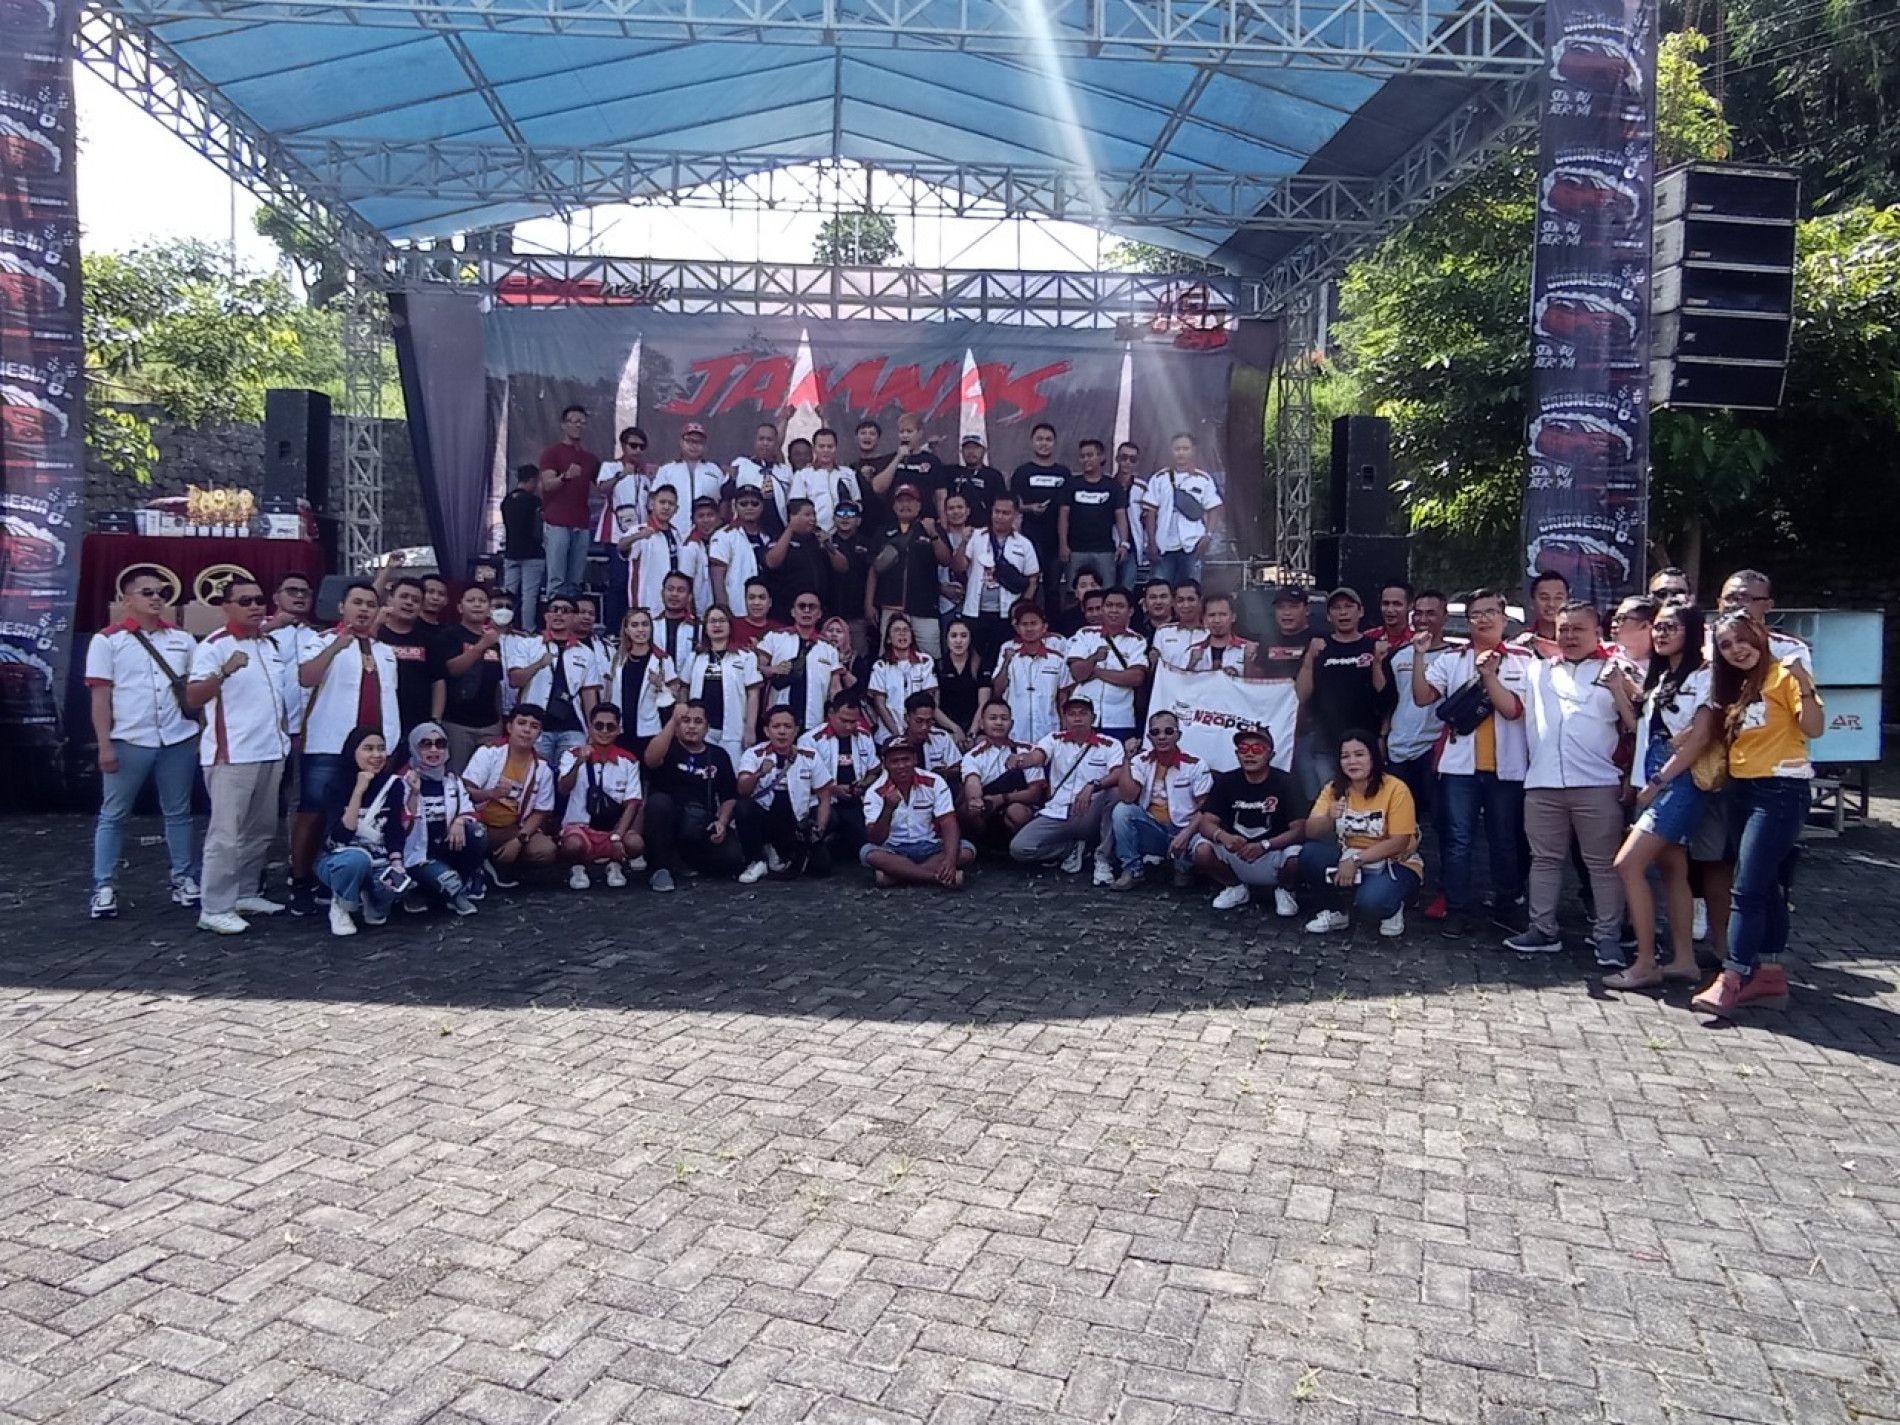 Jalin Keakraban dan Silaturahmi, Brionesia Selenggarakan Jambore Nasional Dengan Tema “Keep Moving Together”